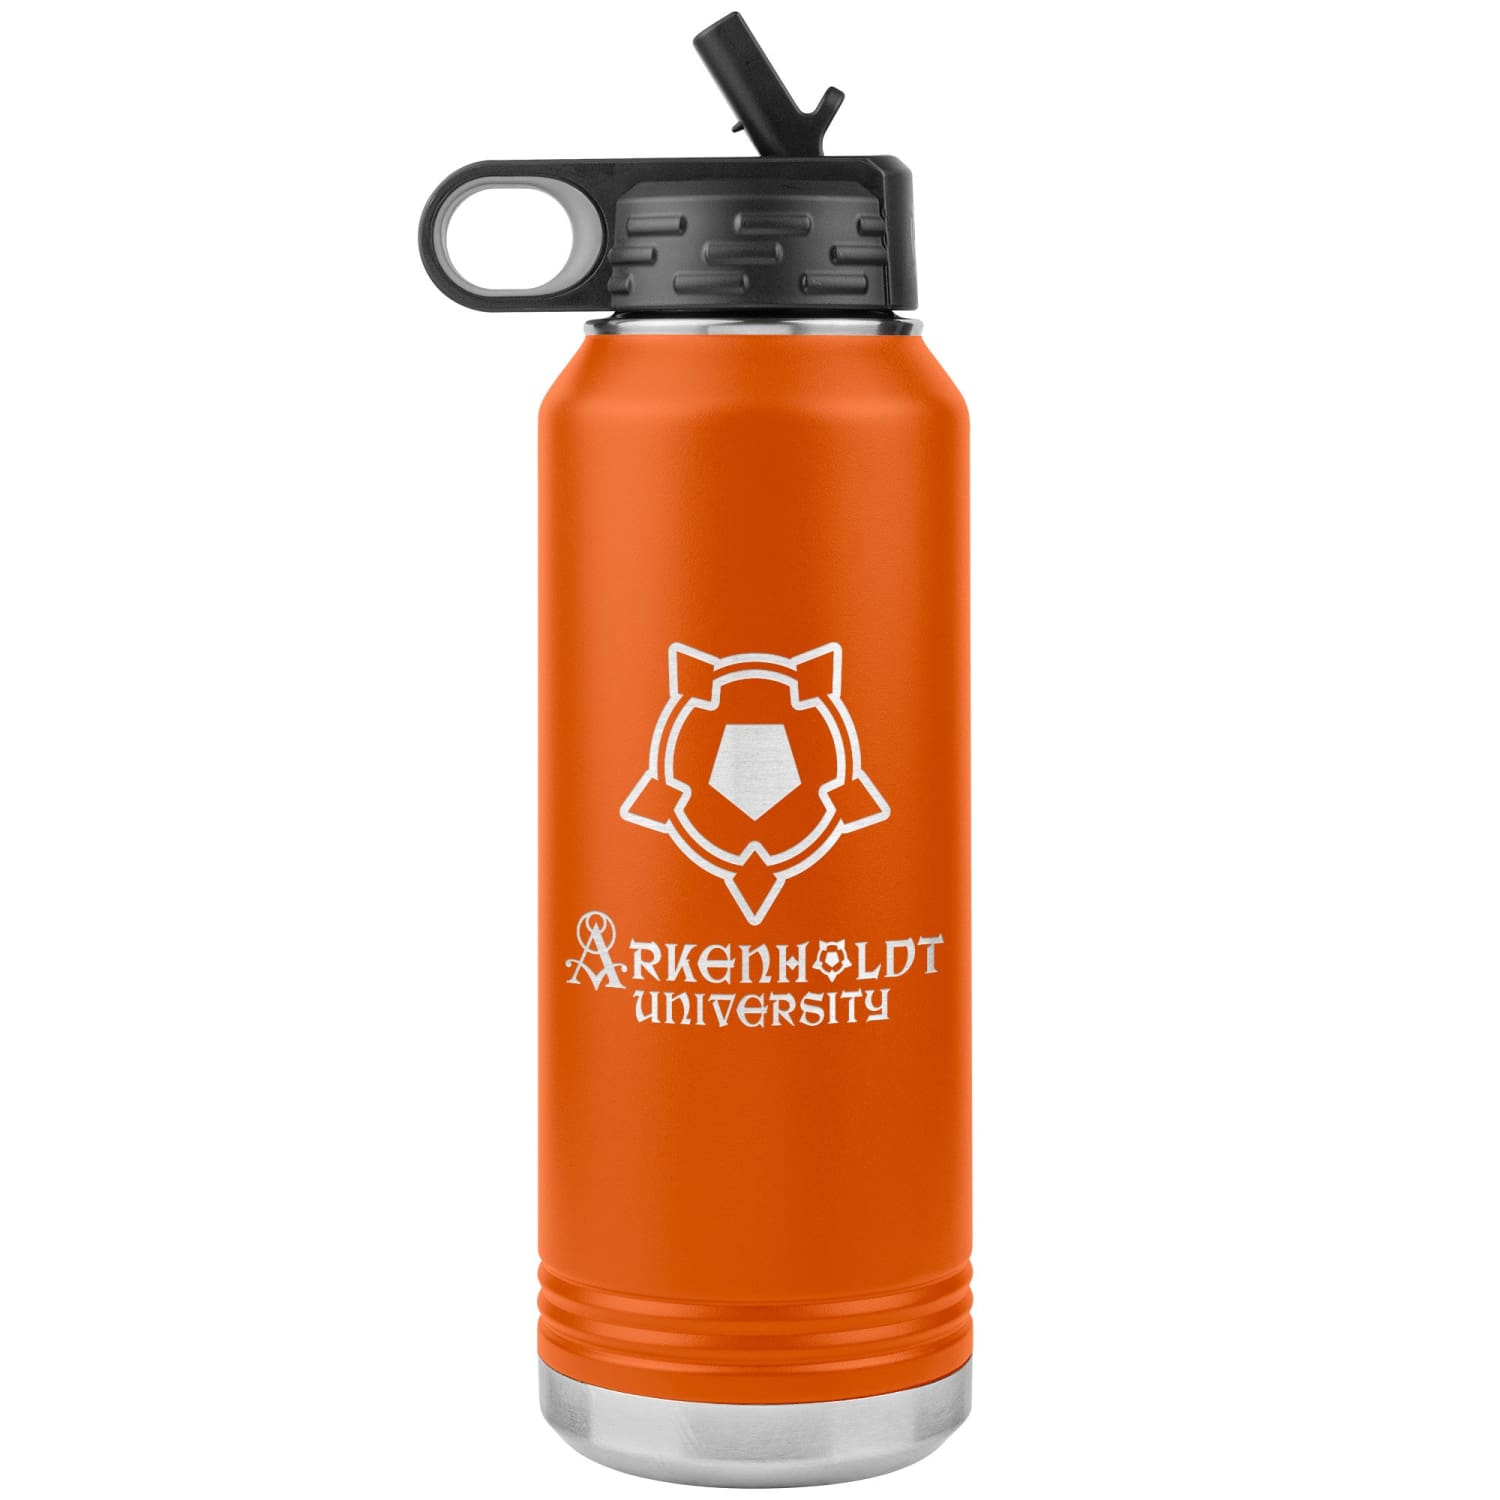 Arkenholdt Arkenstar 32oz Water Bottle Tumbler - Orange - Water Bottle